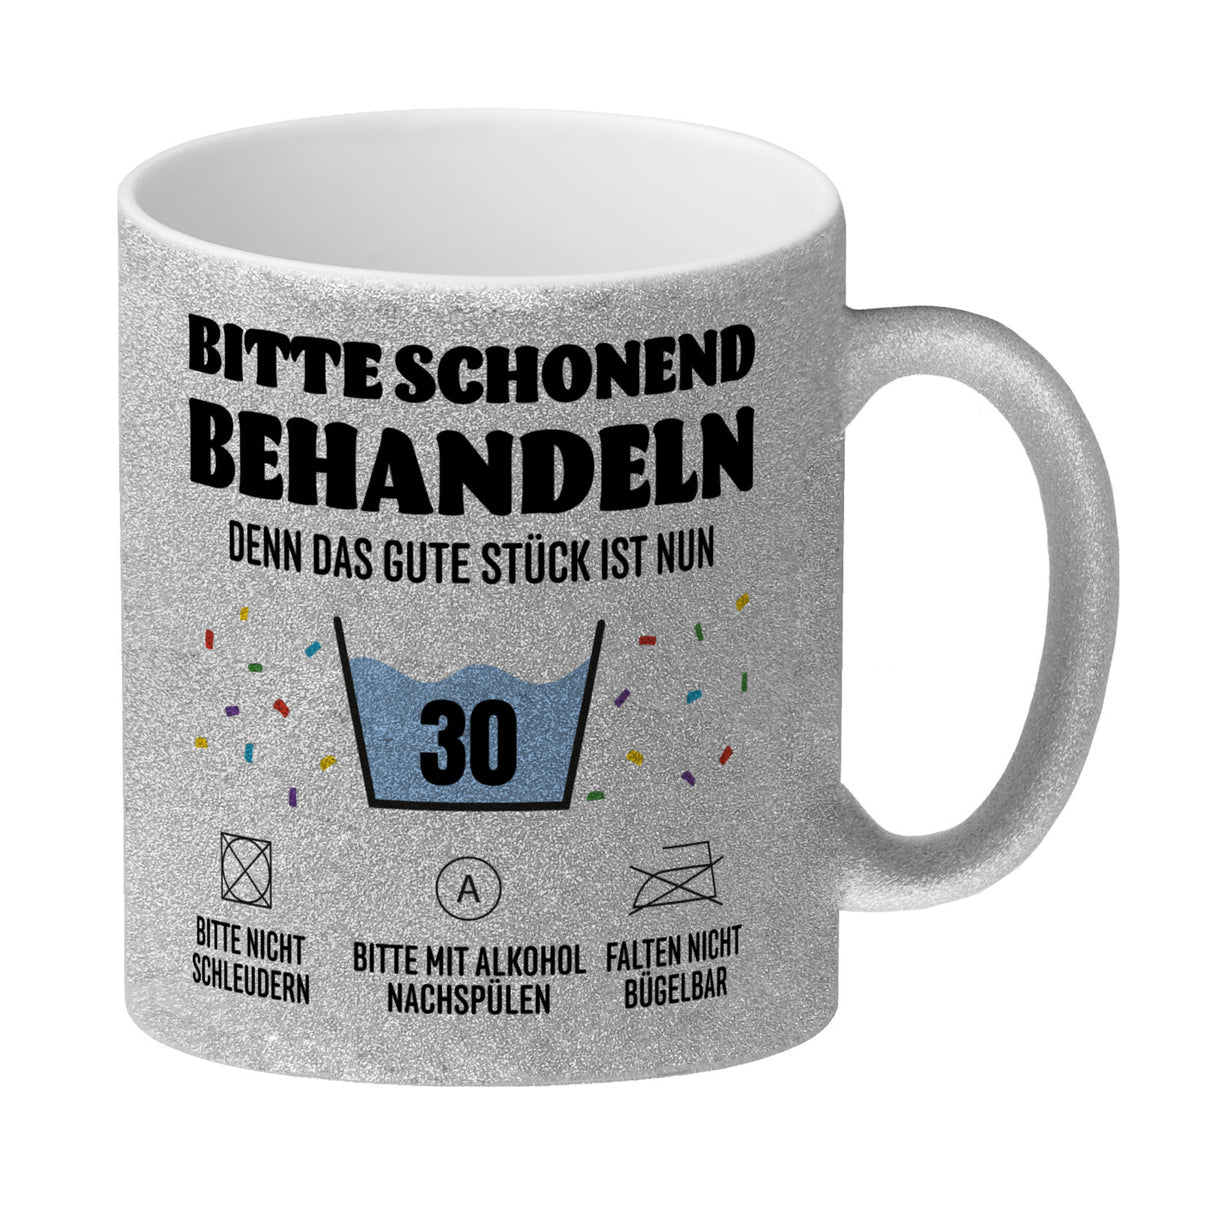 Bitte schonend behandeln - 30. Geburtstag Kaffeebecher